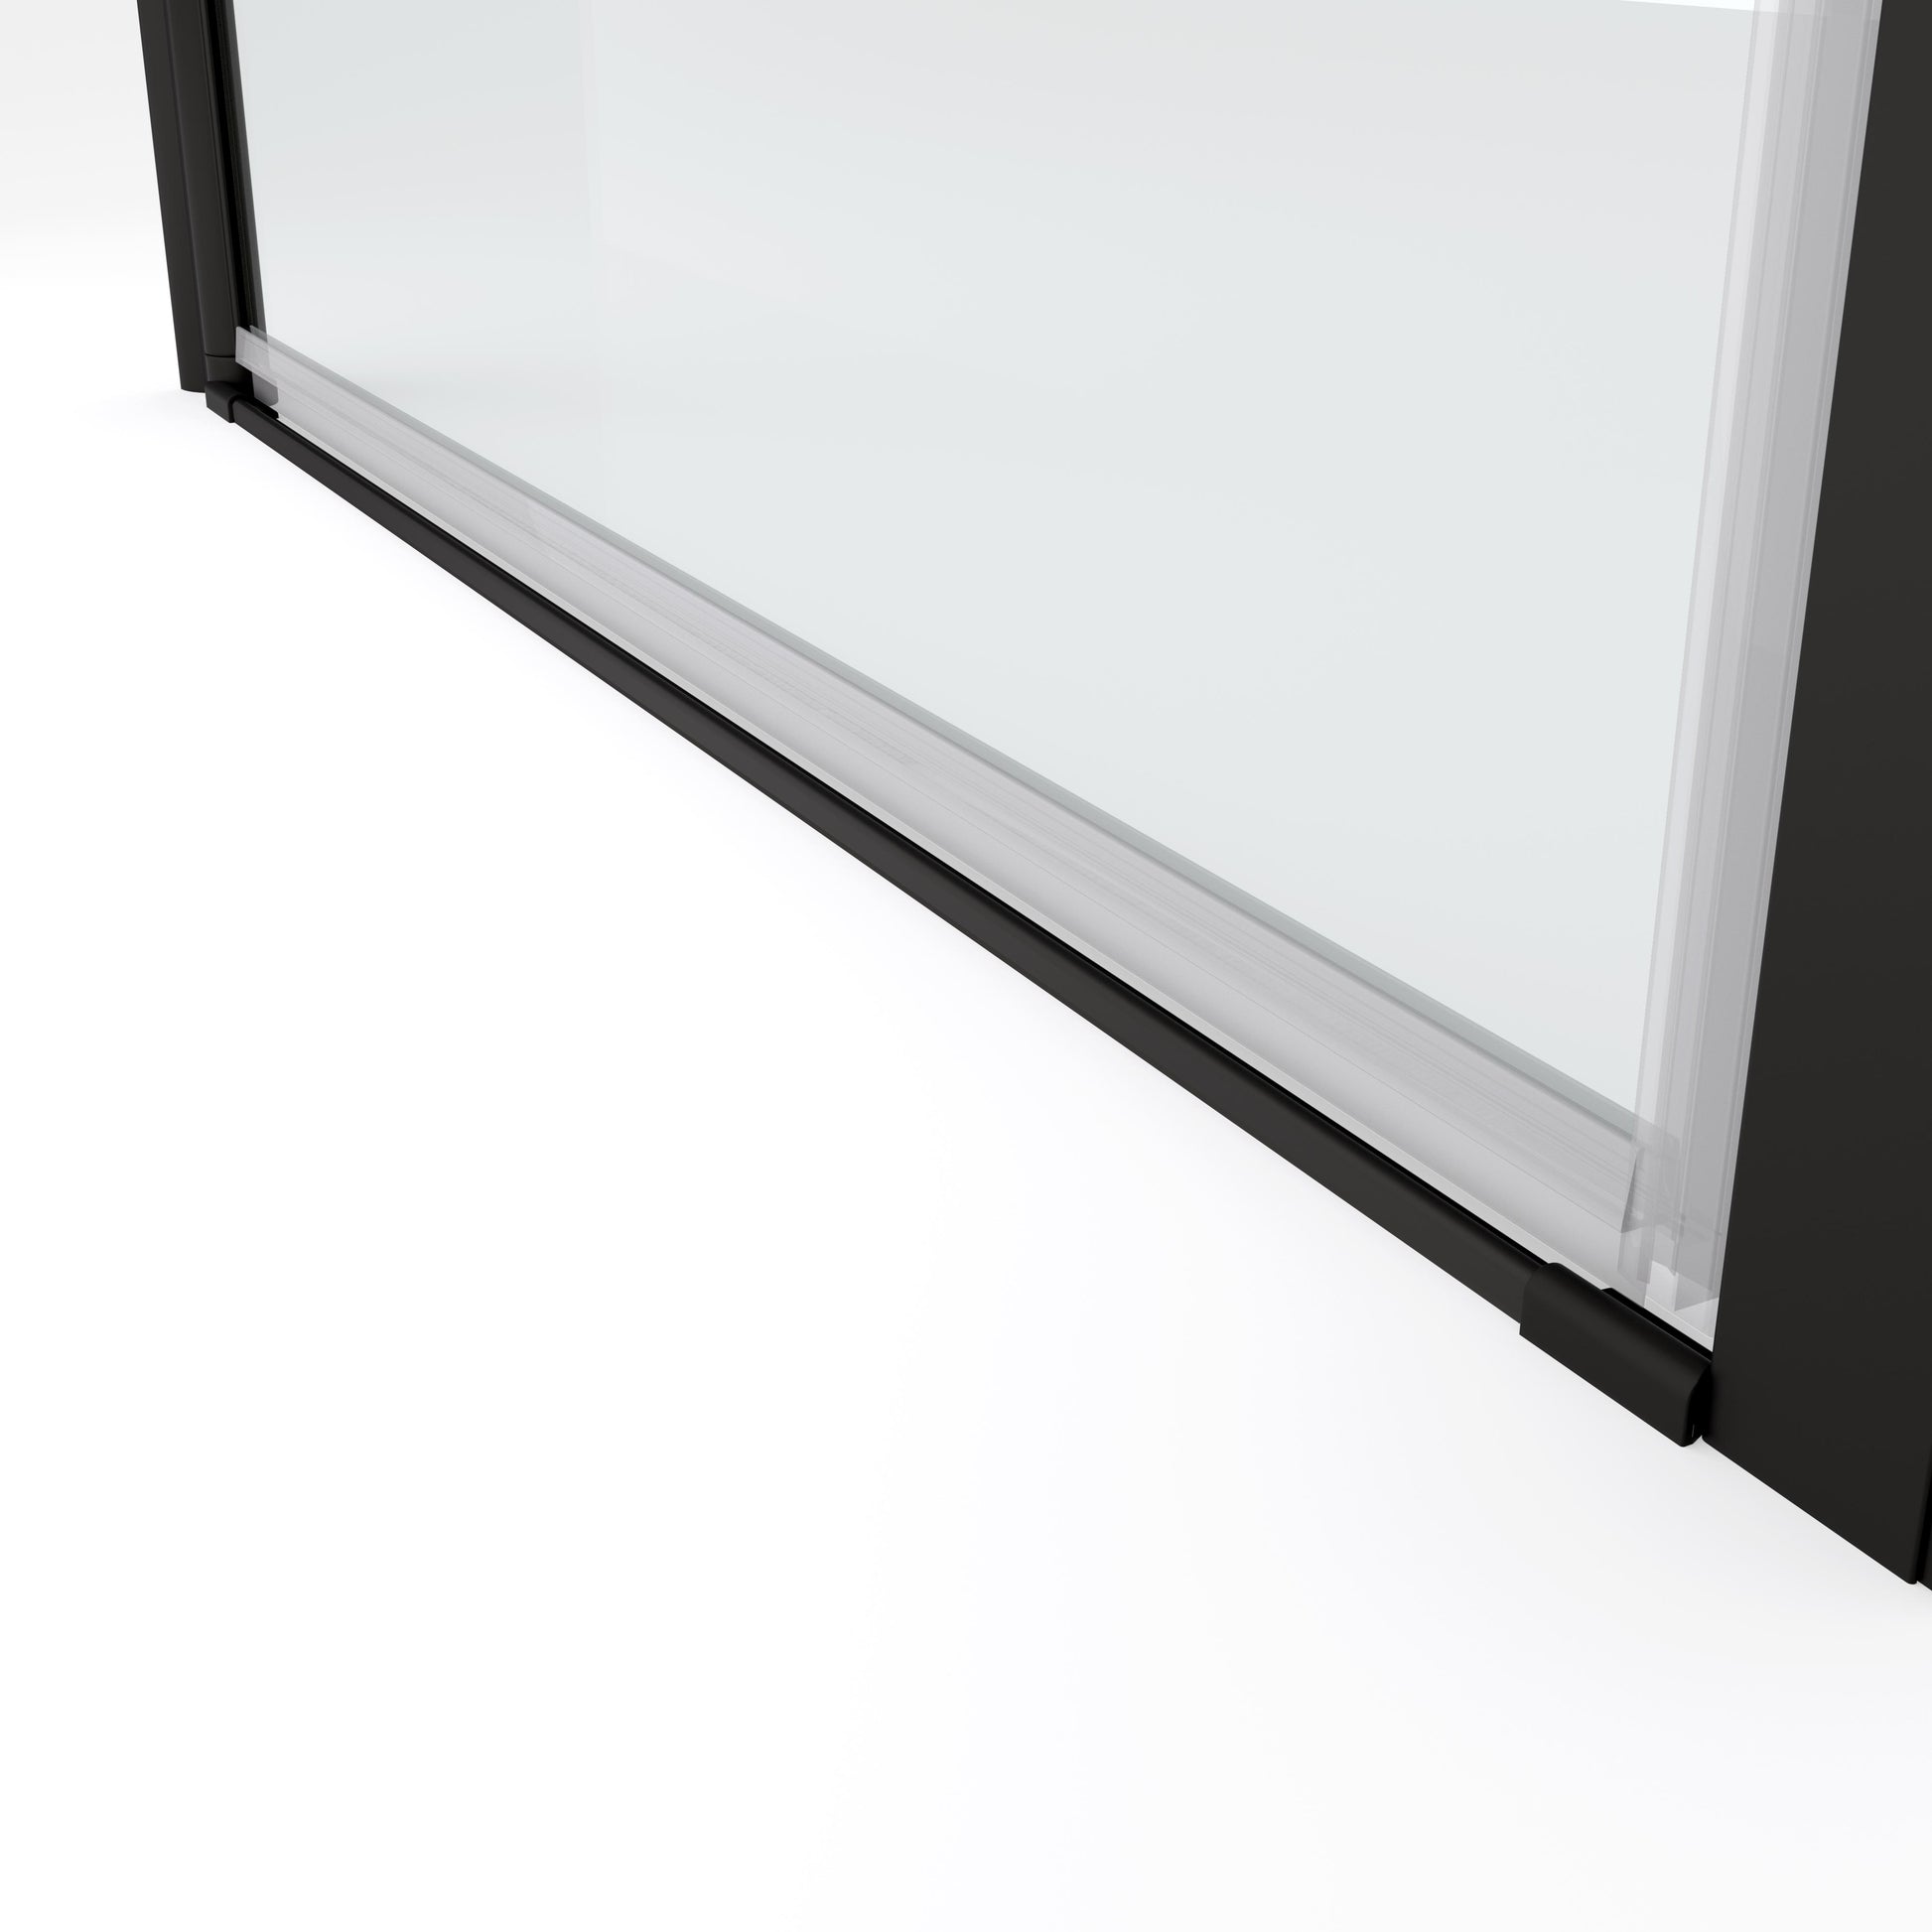 matte black framed pivot glass shower door